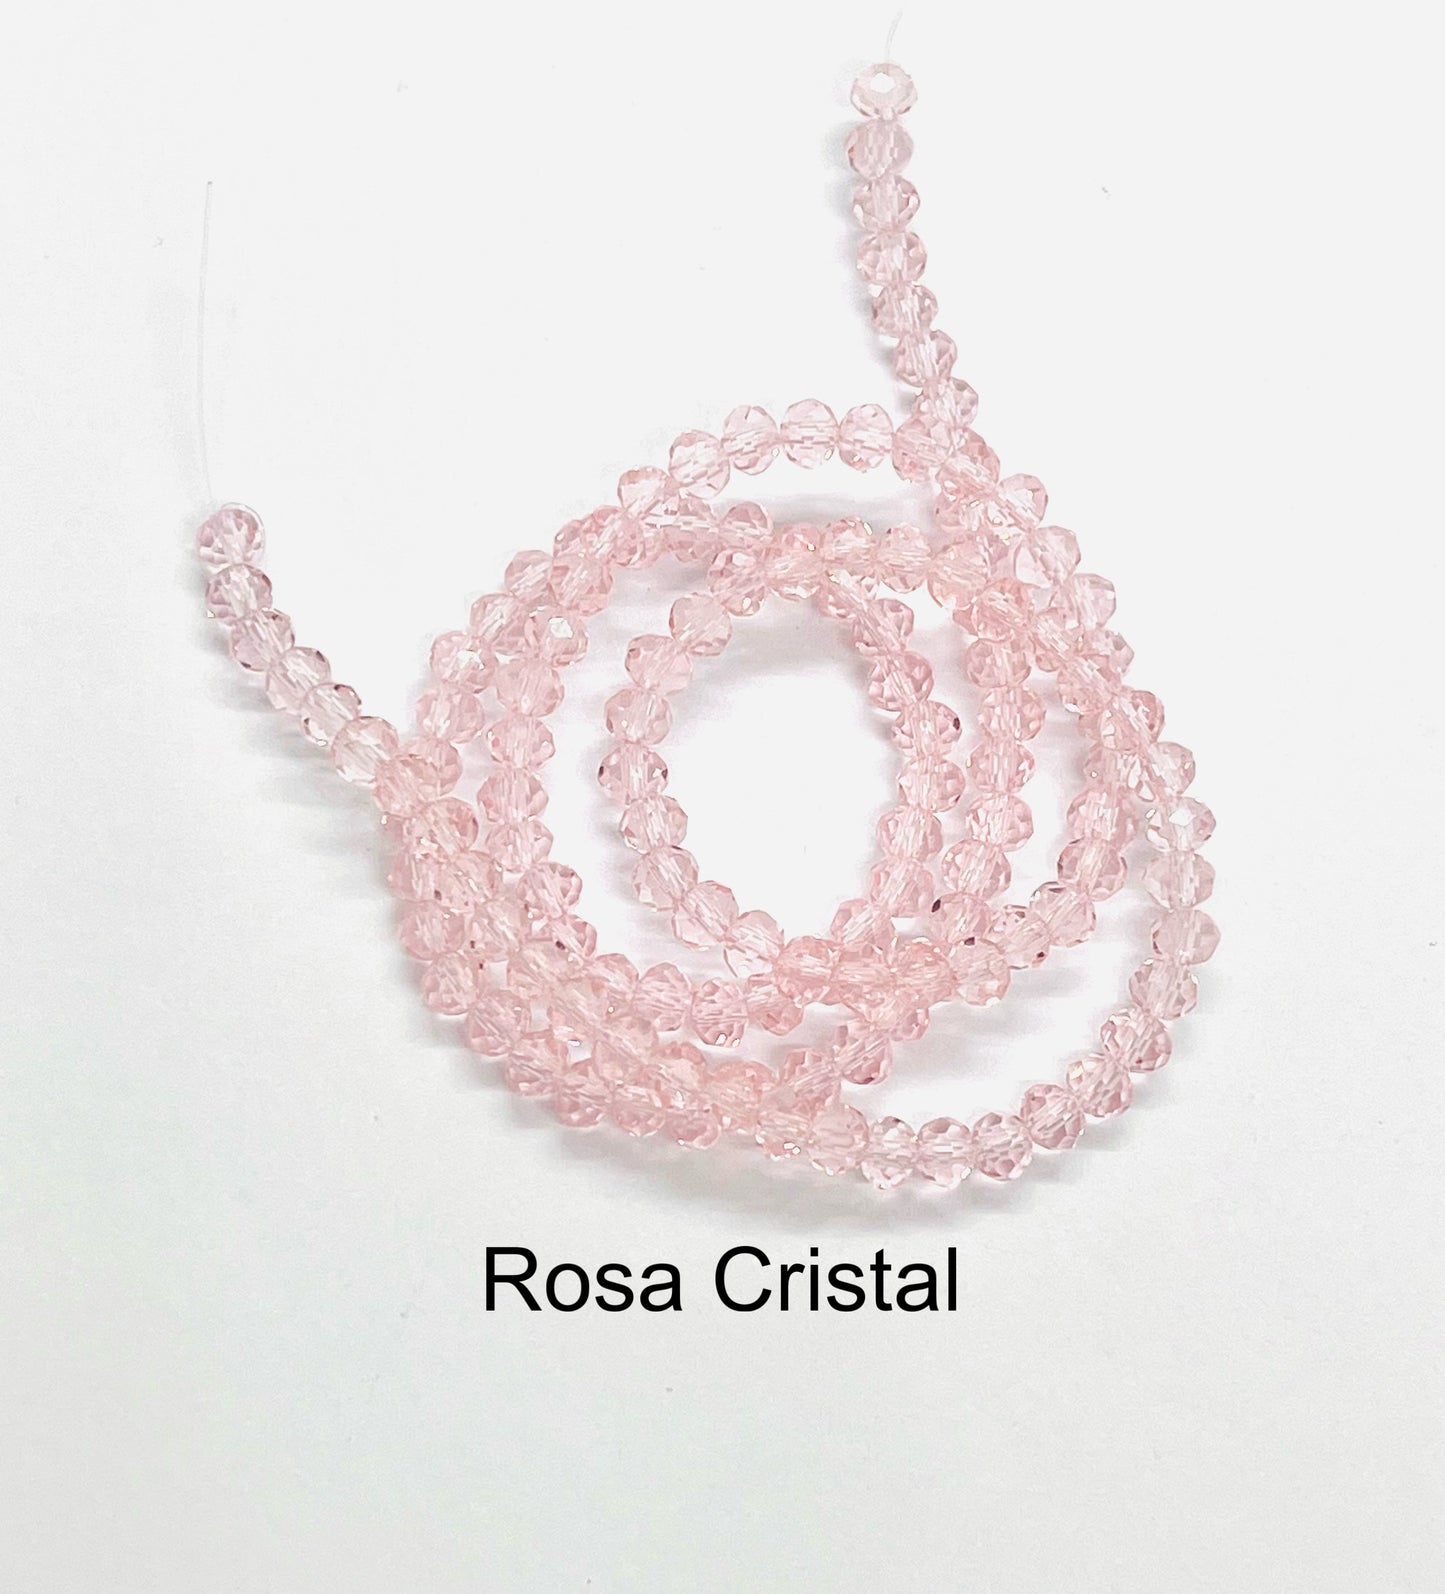 Cristal Rondel 3 x 2 mm